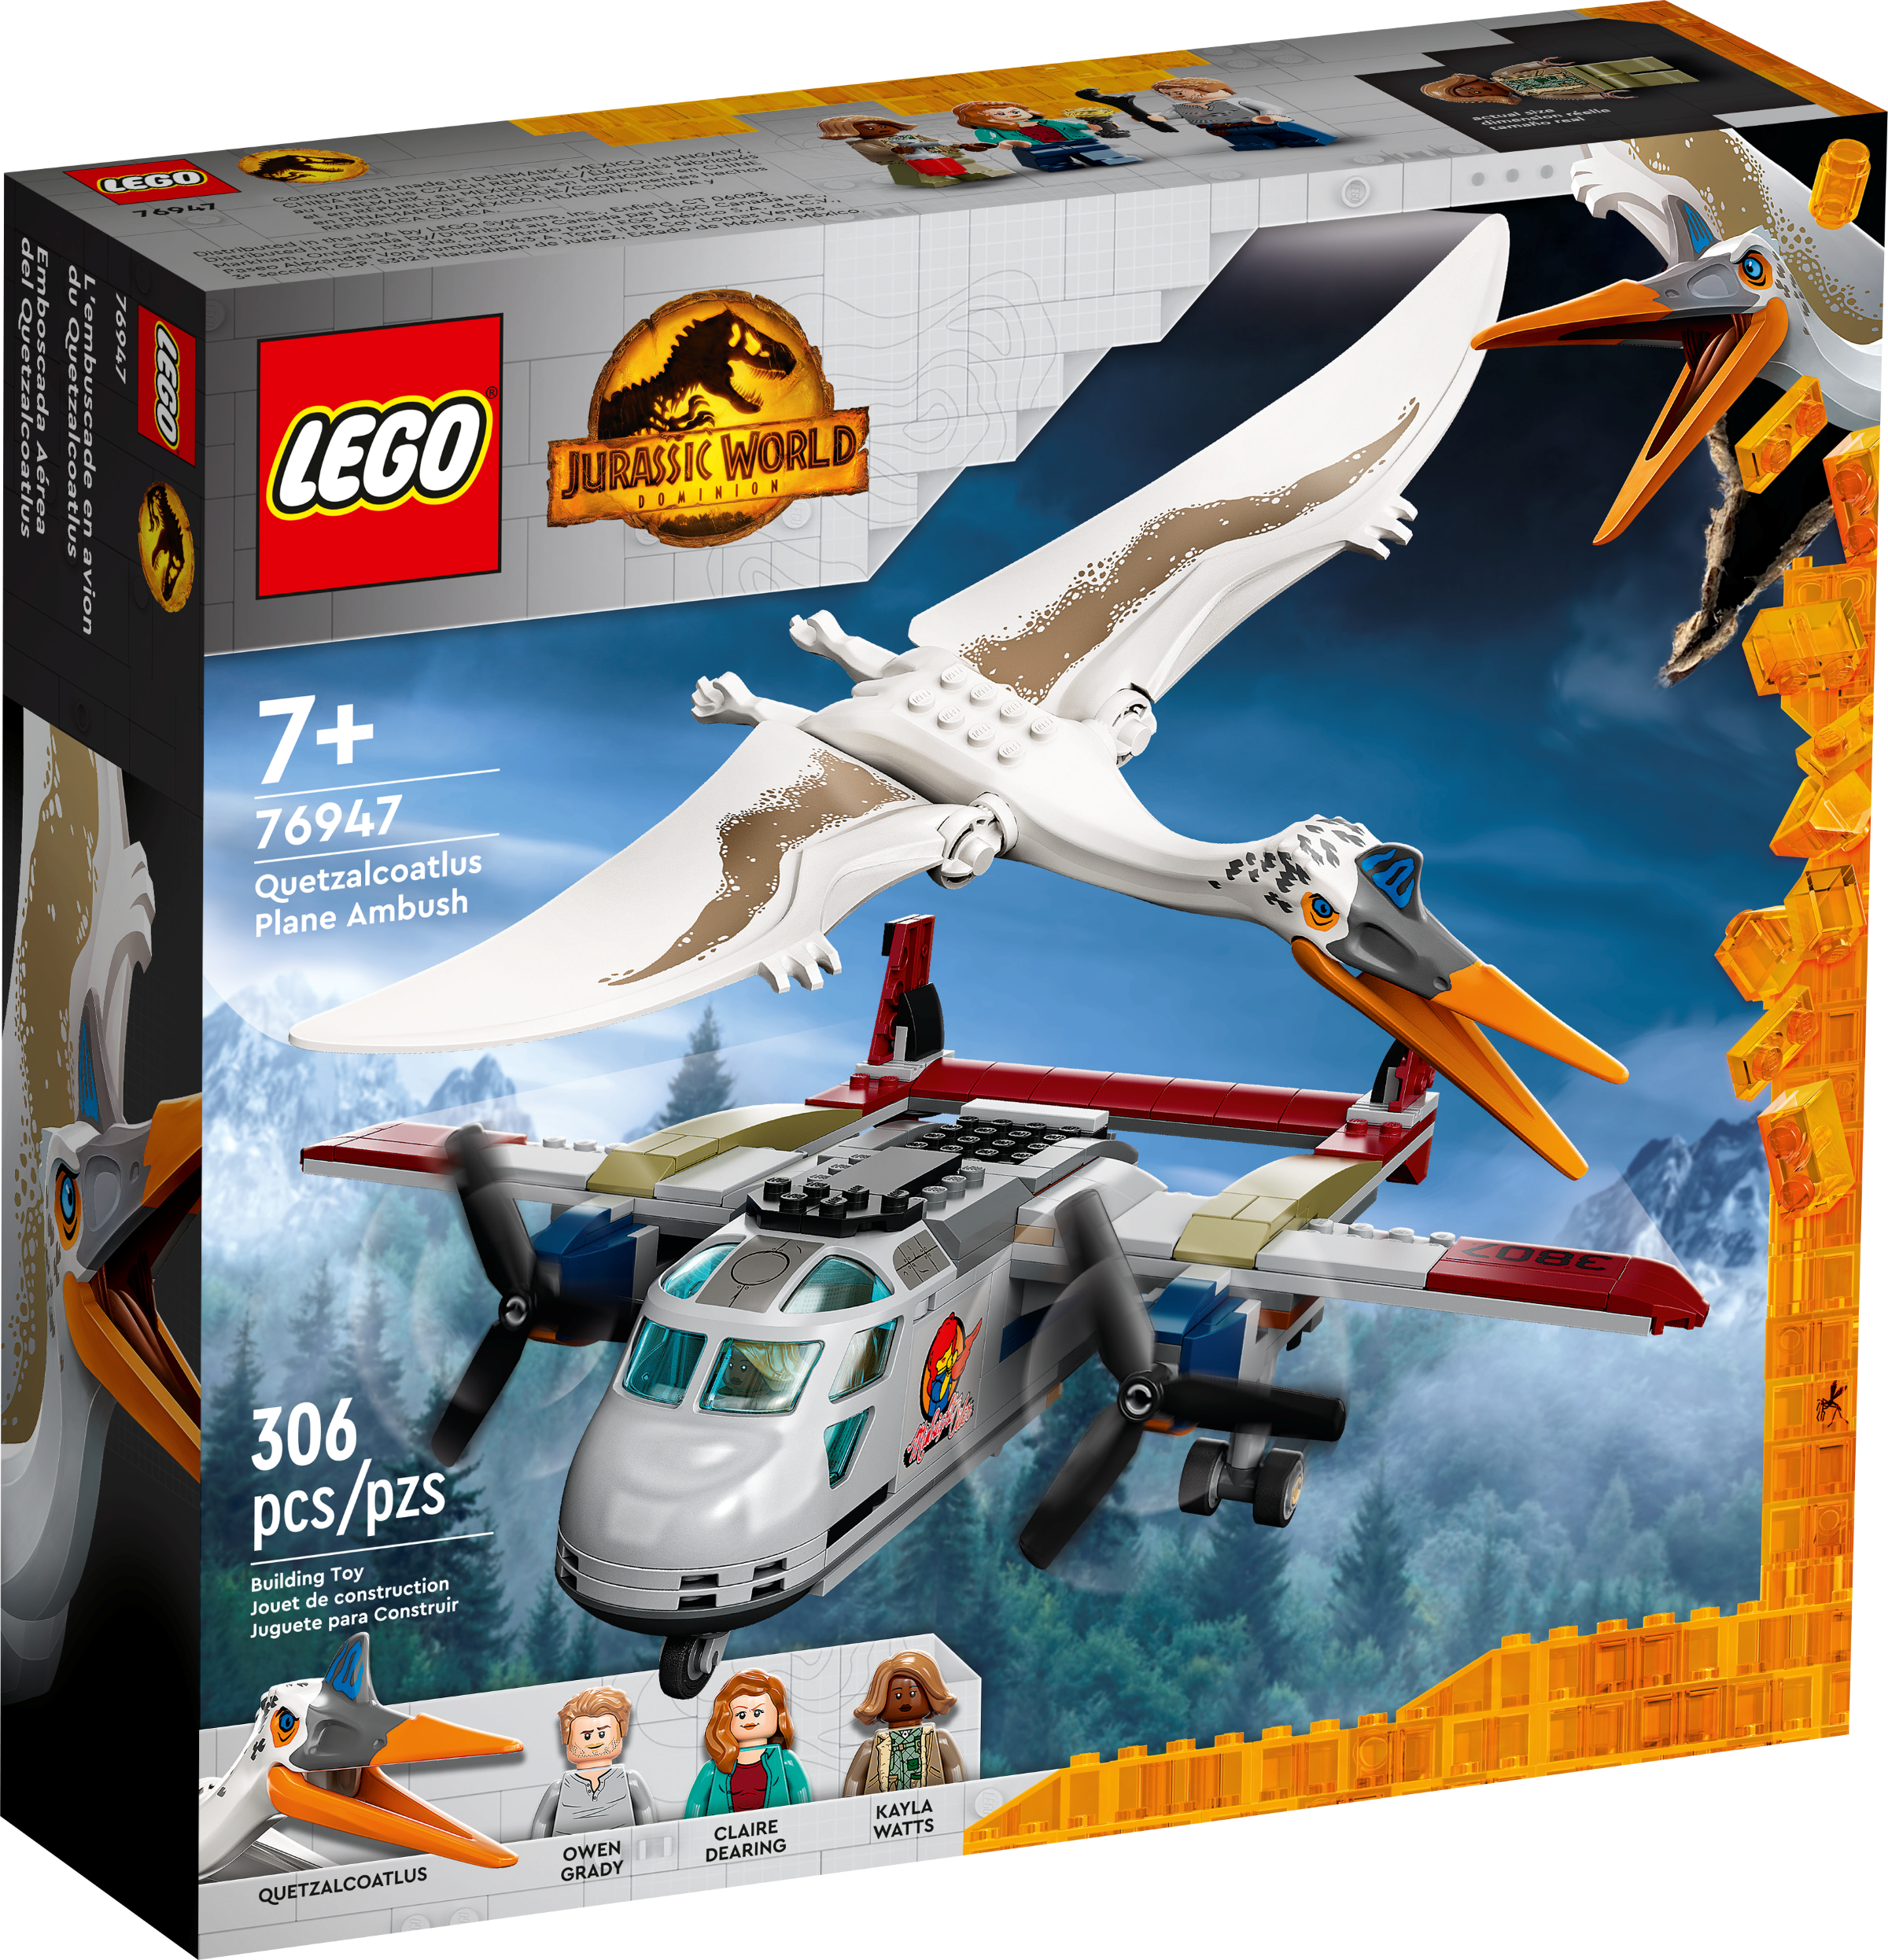 Quetzalcoatlus Plane Ambush 76947, Jurassic World™